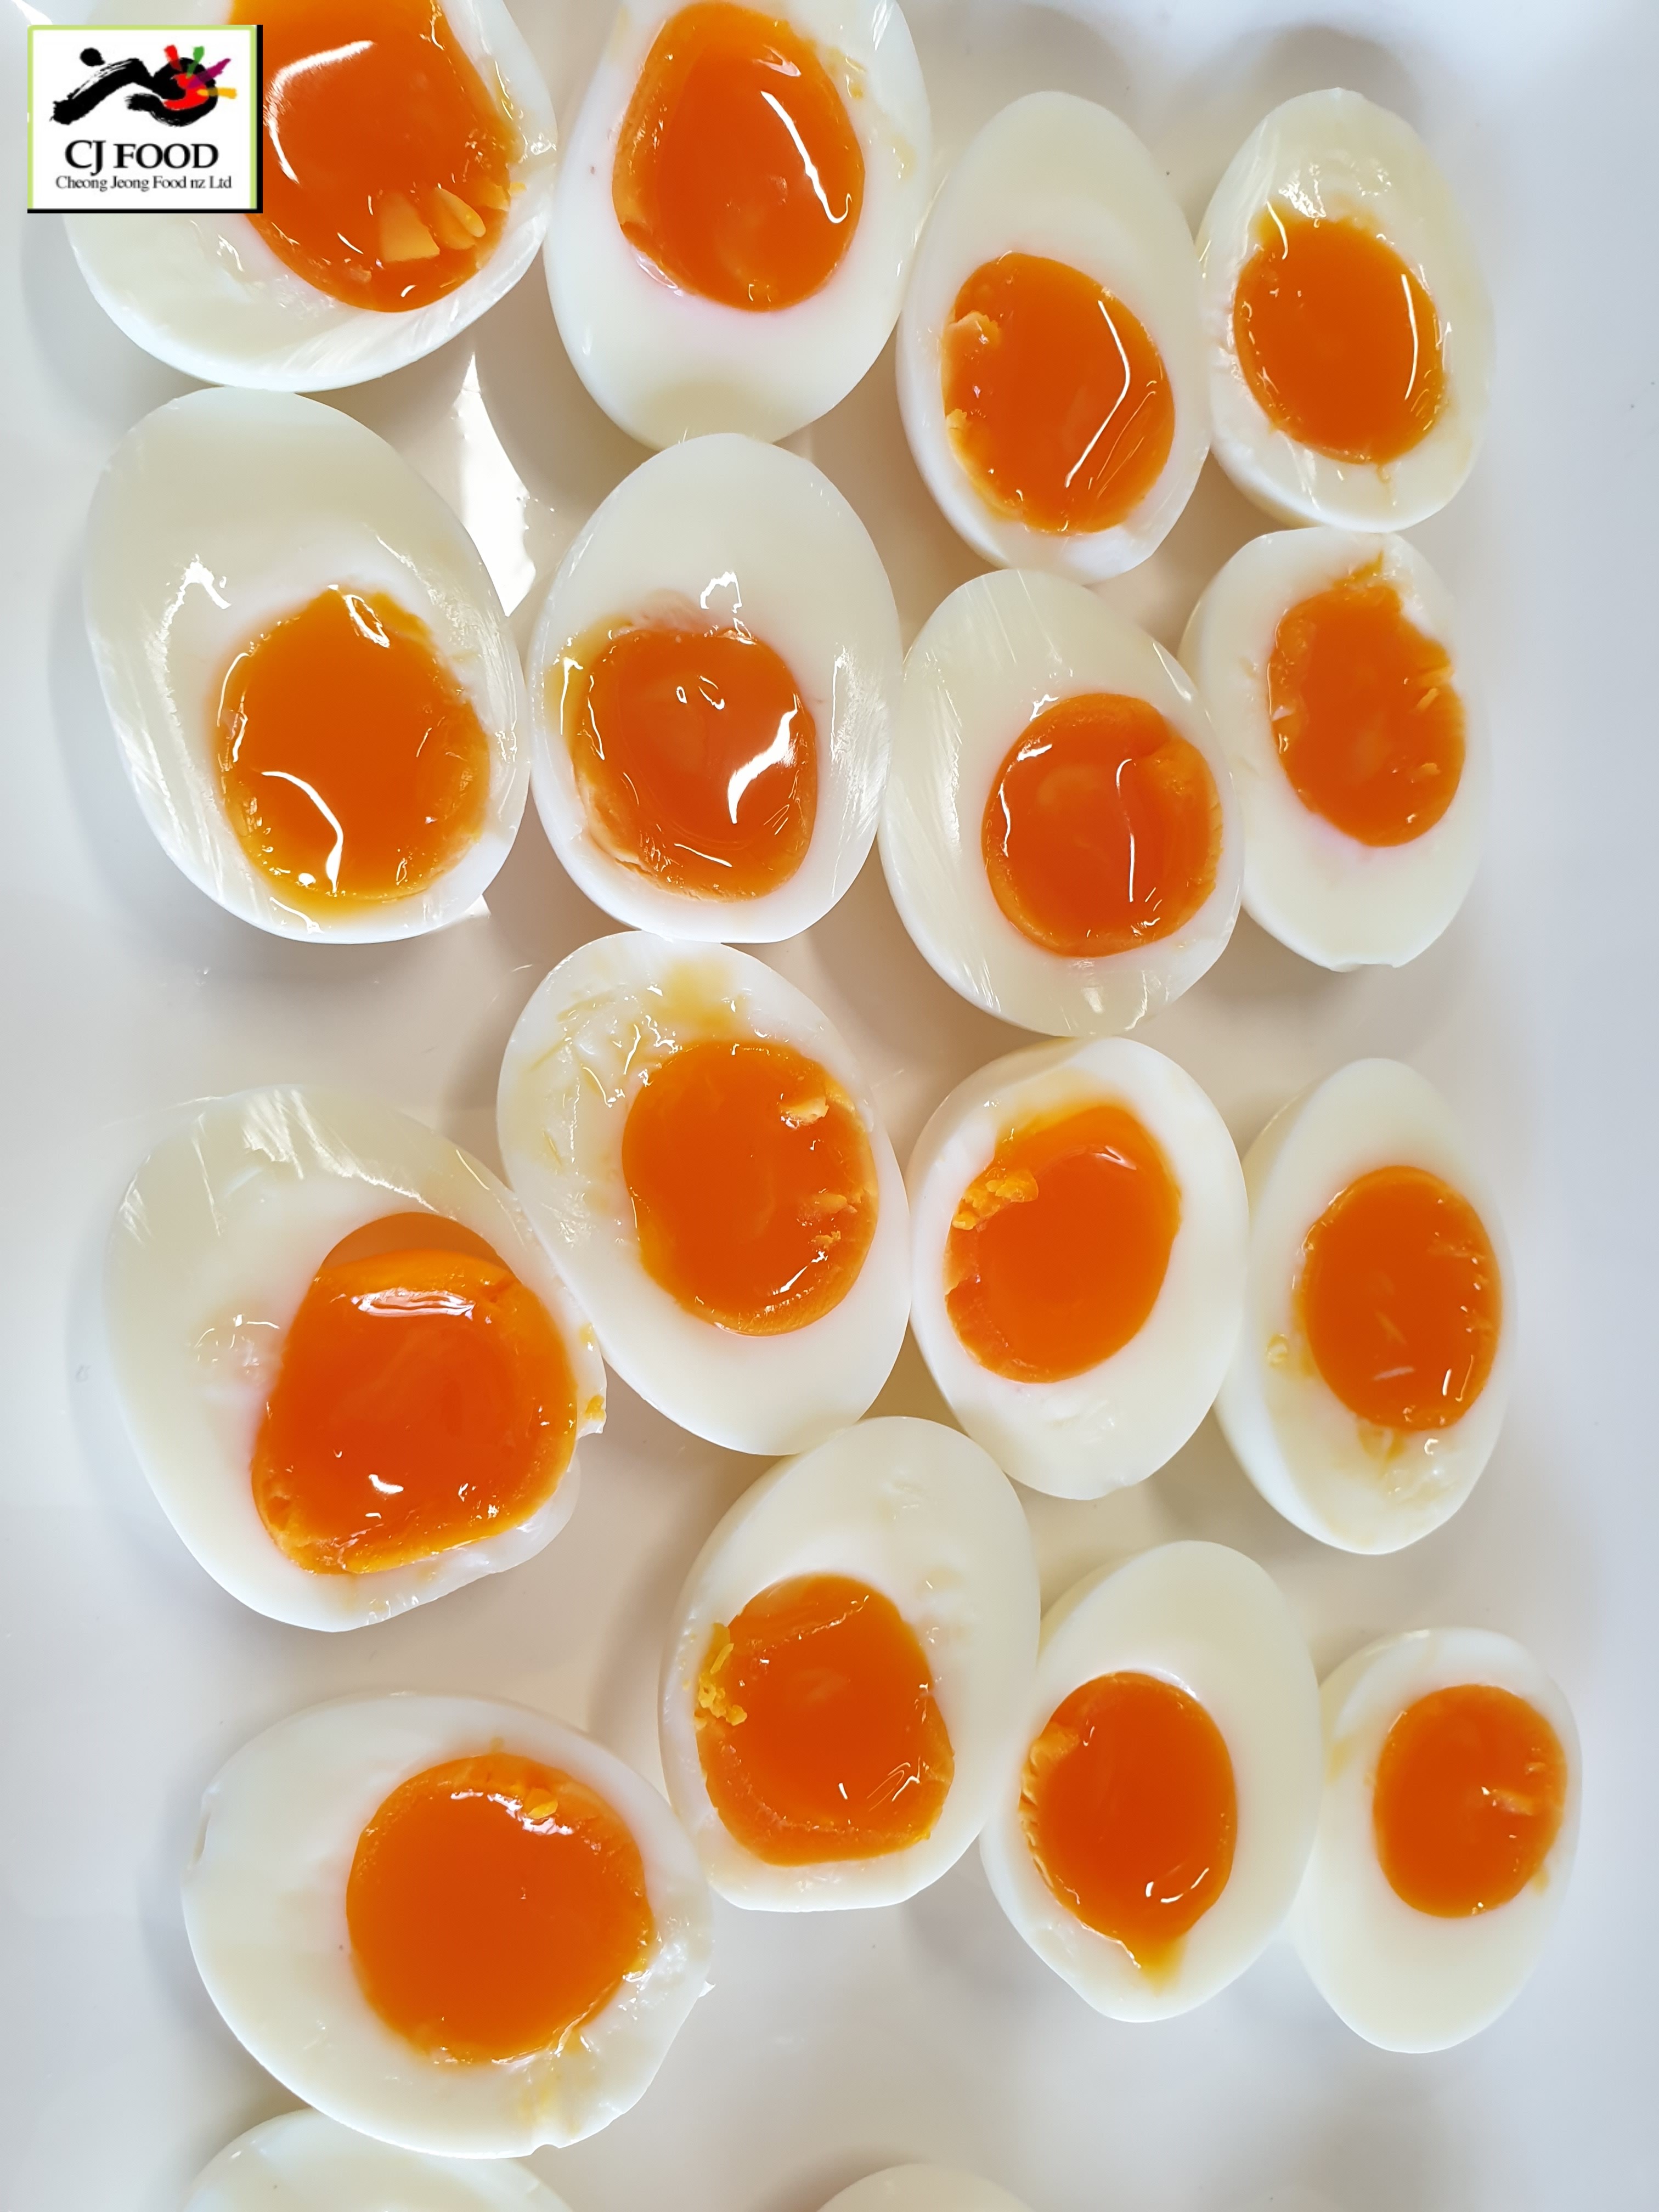 Soft - Boiled Eggs